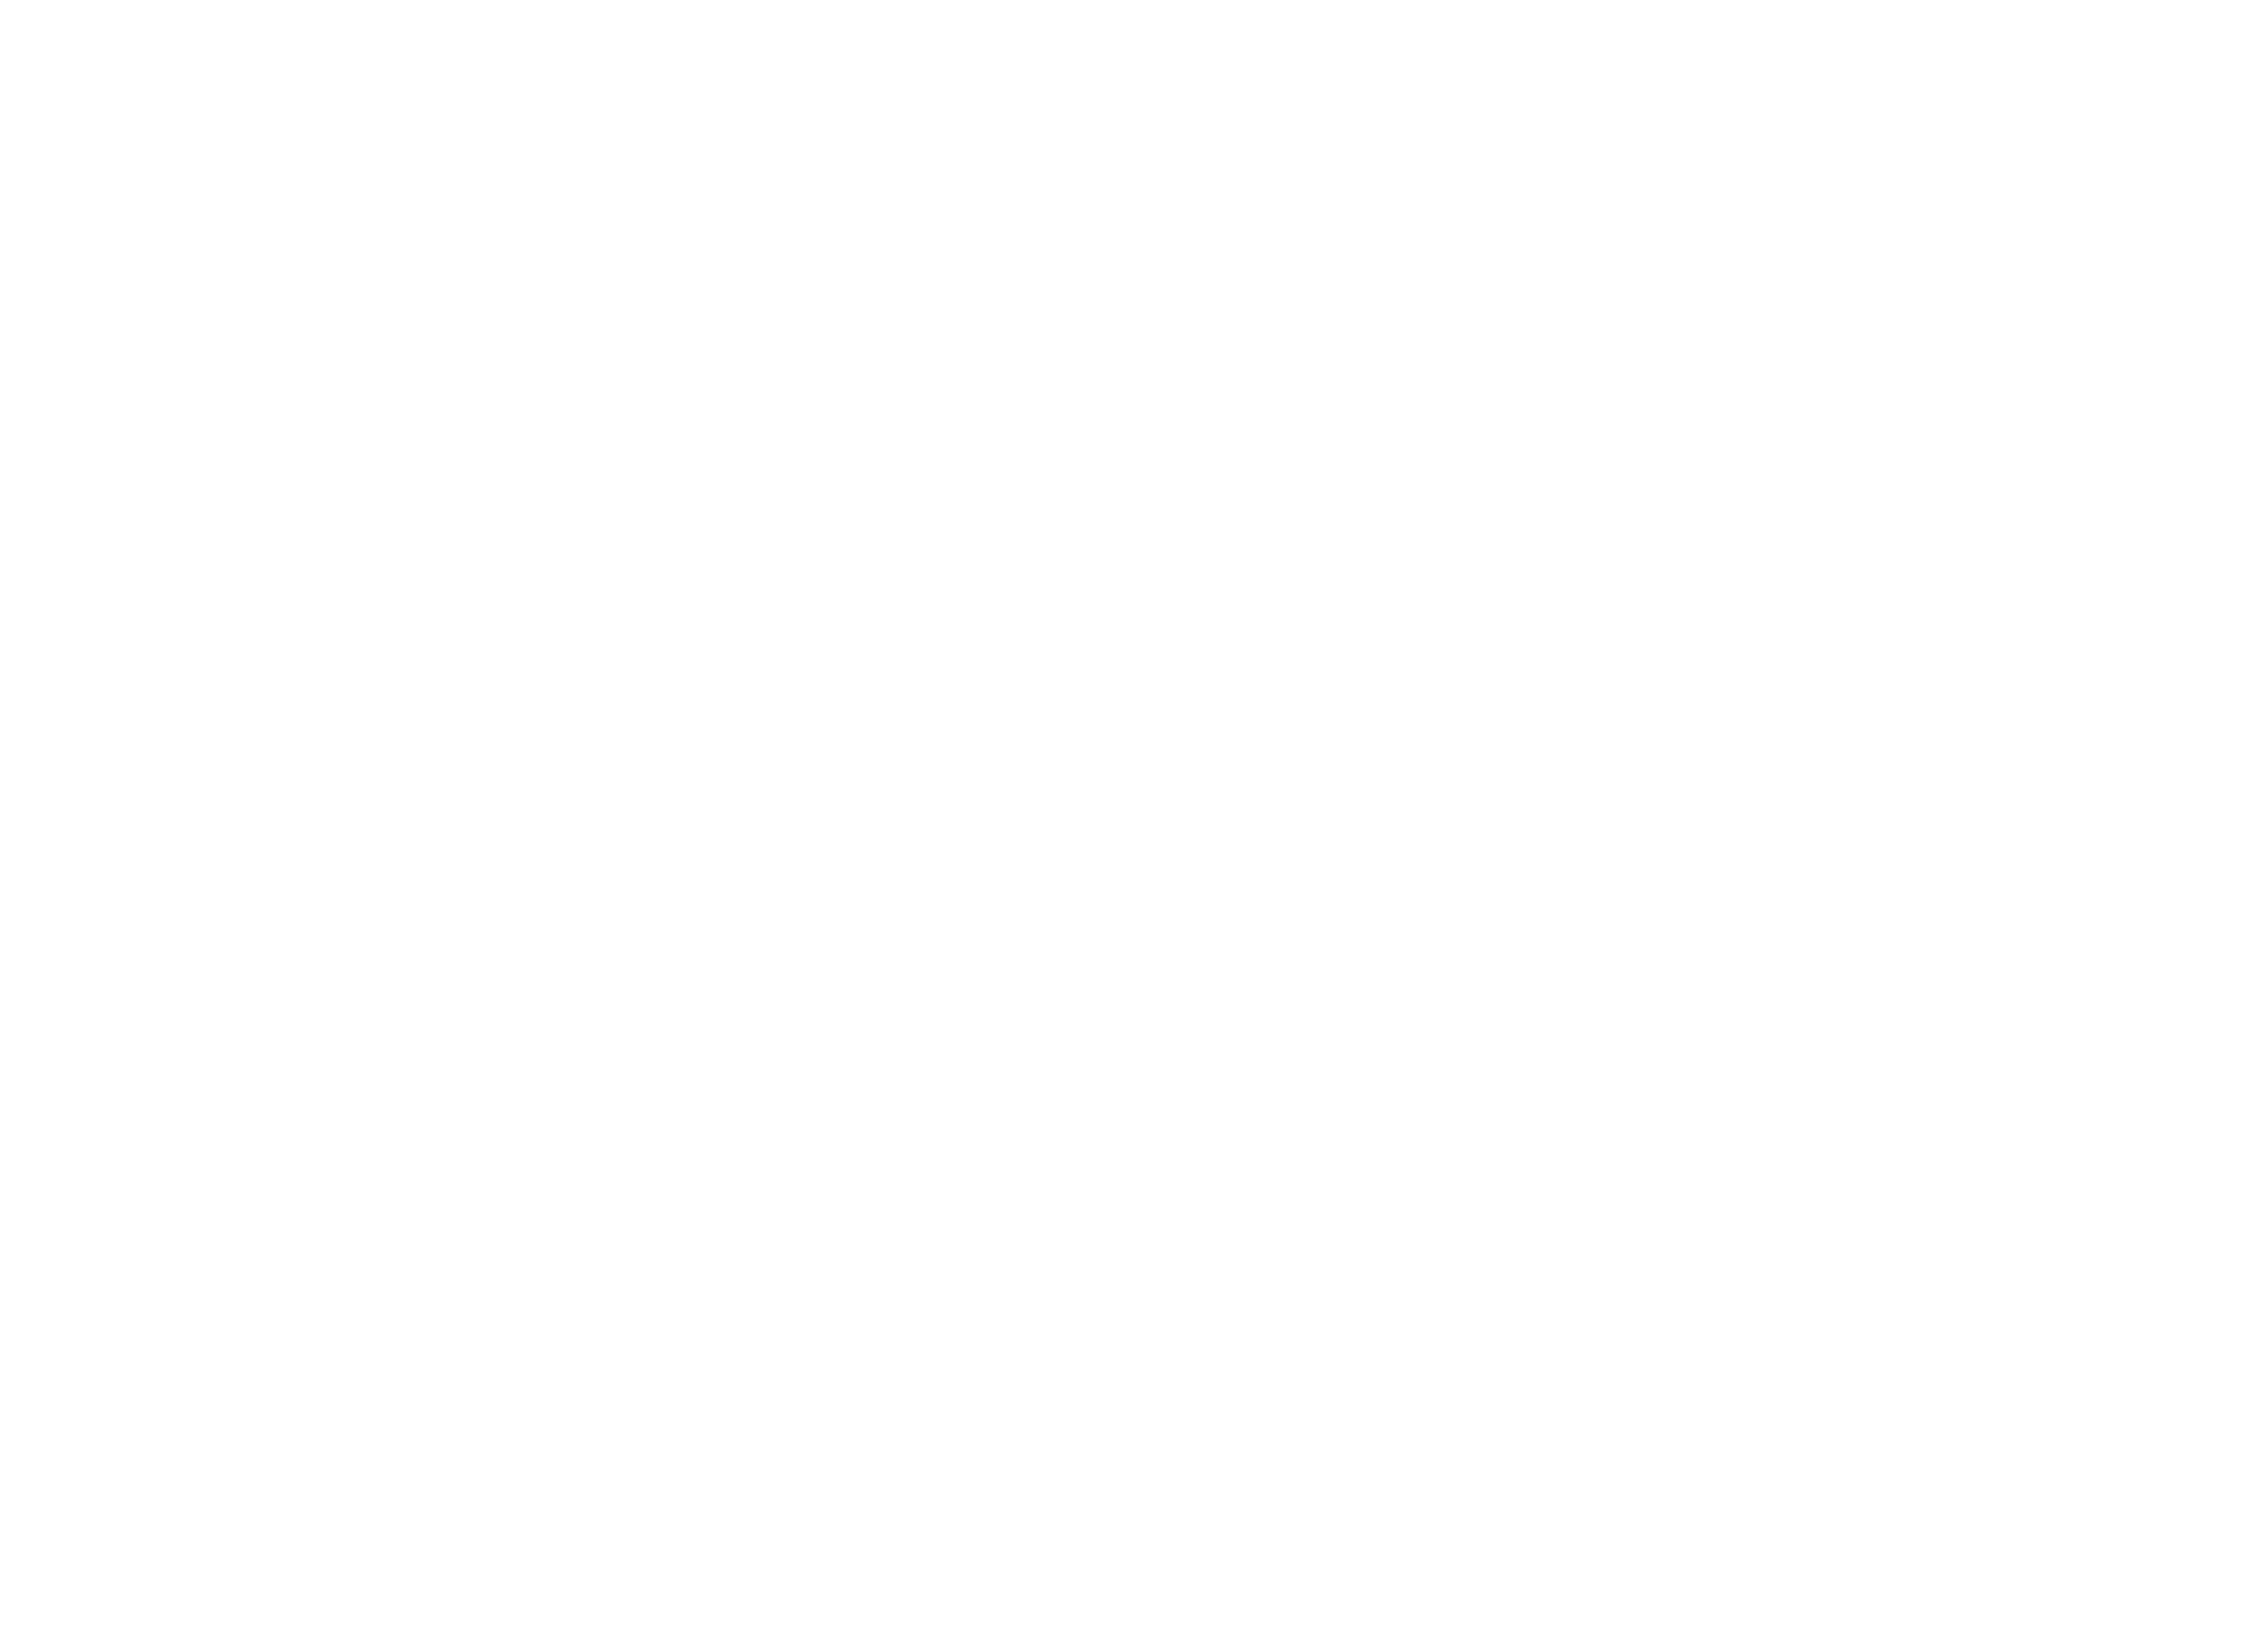 Bayrischer Burg Biergarten 1177